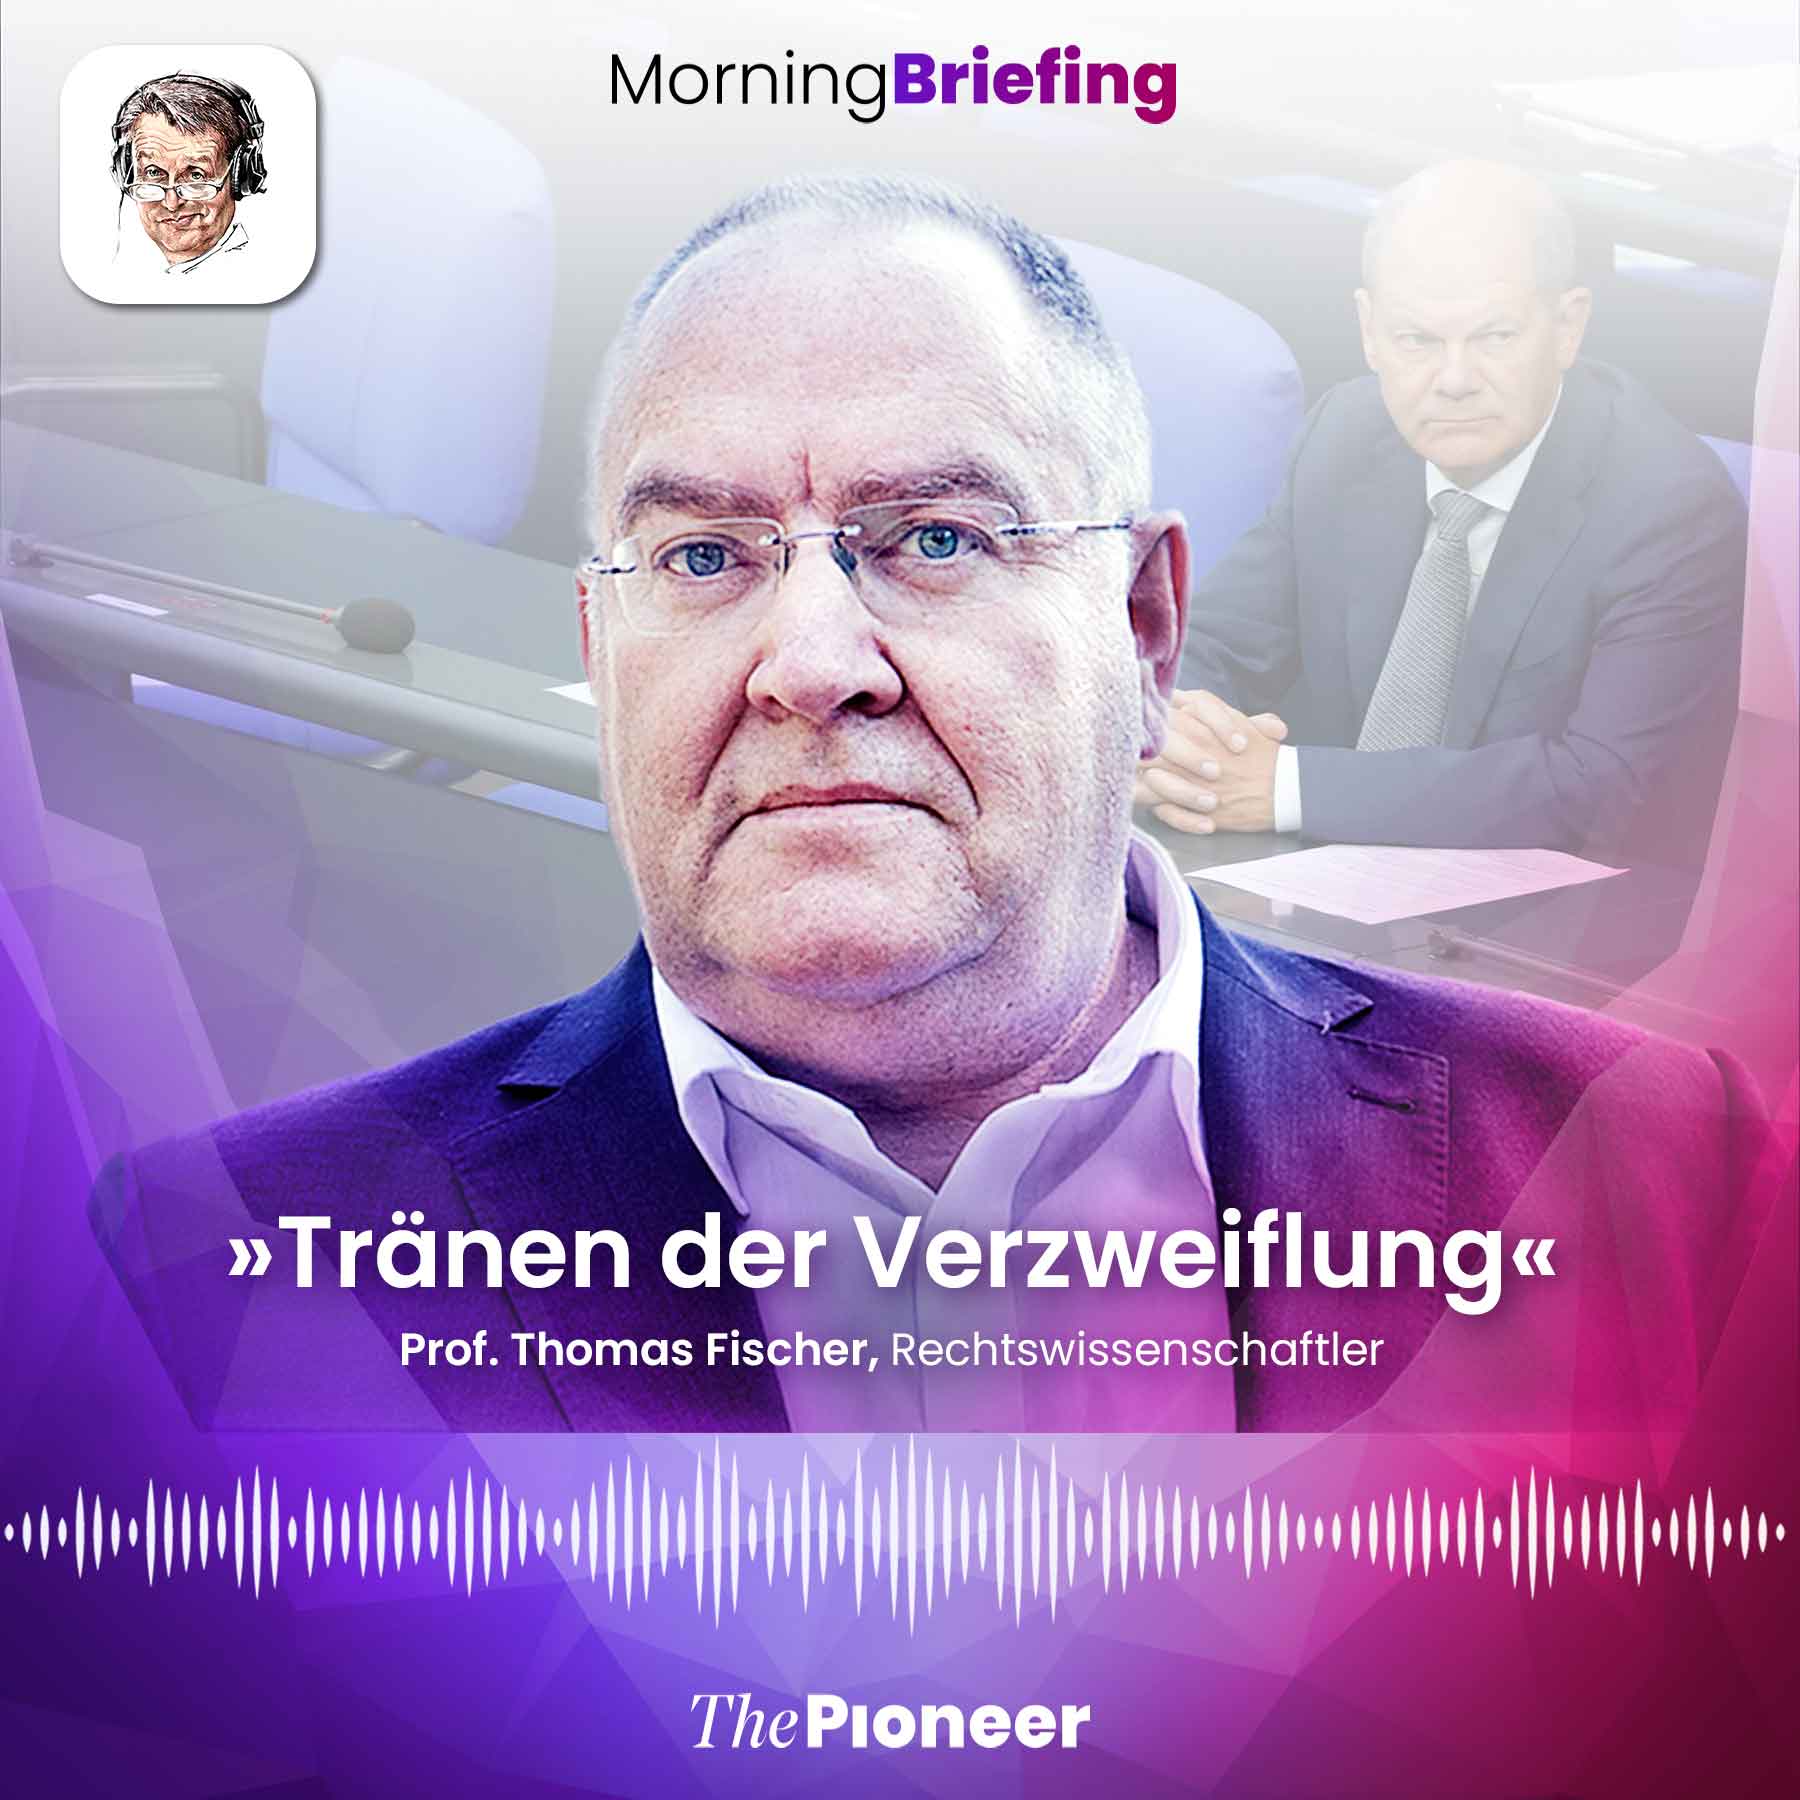 Prof. Thomas Fischer